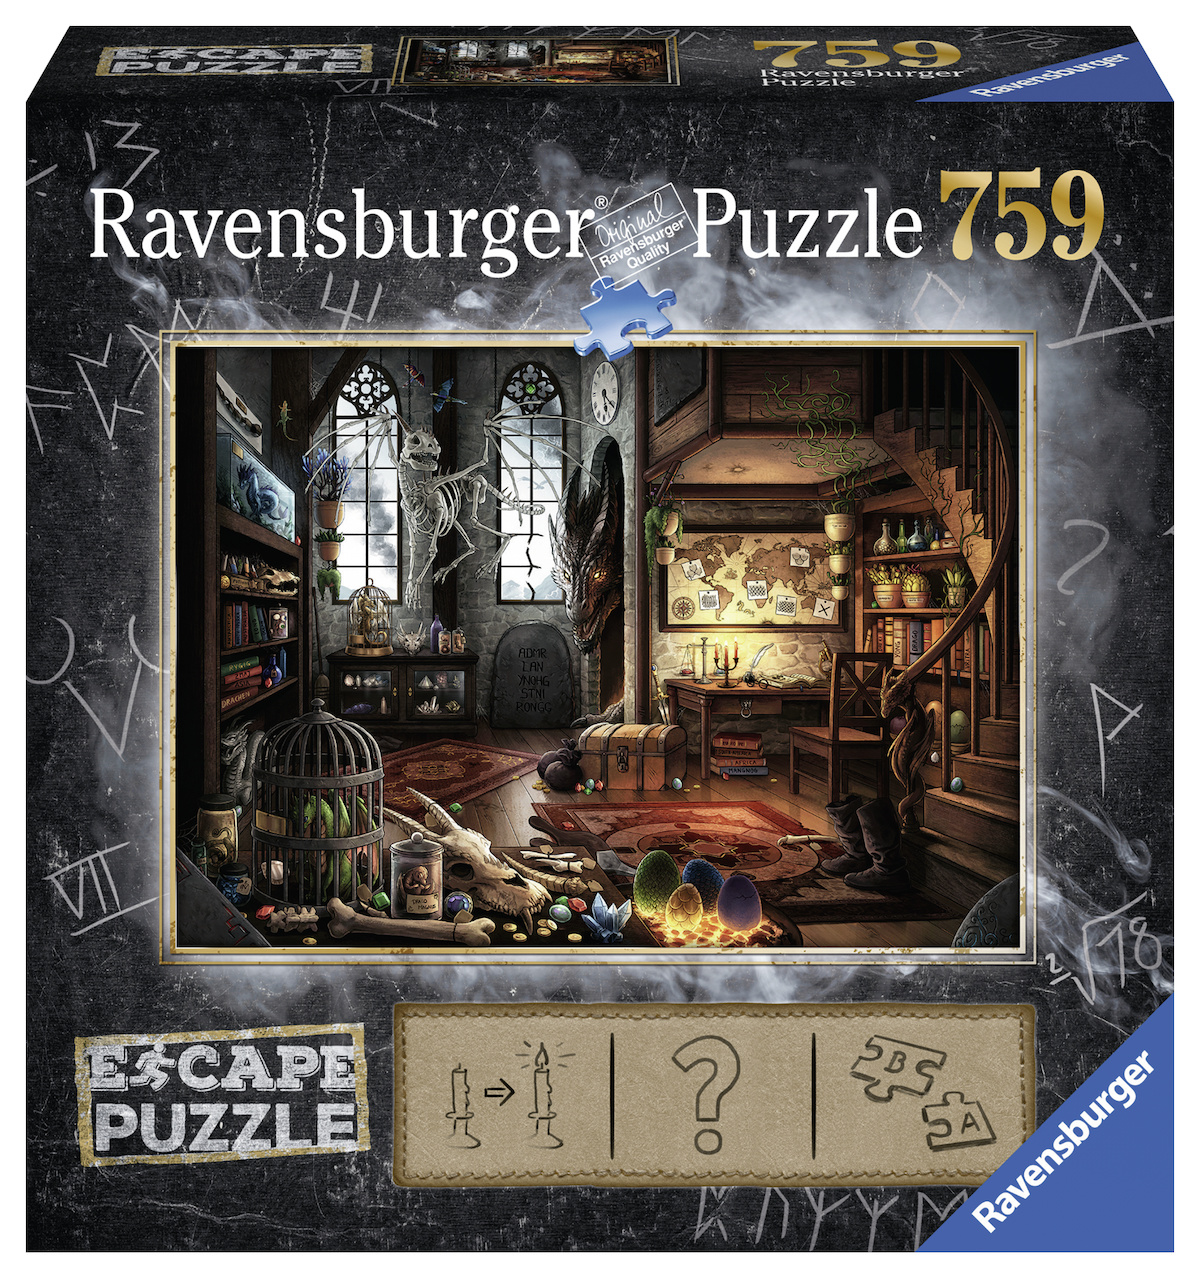 Ravensburger Escape 1 Space Observatory Jigsaw Puzzle 759 Pcs for sale online 